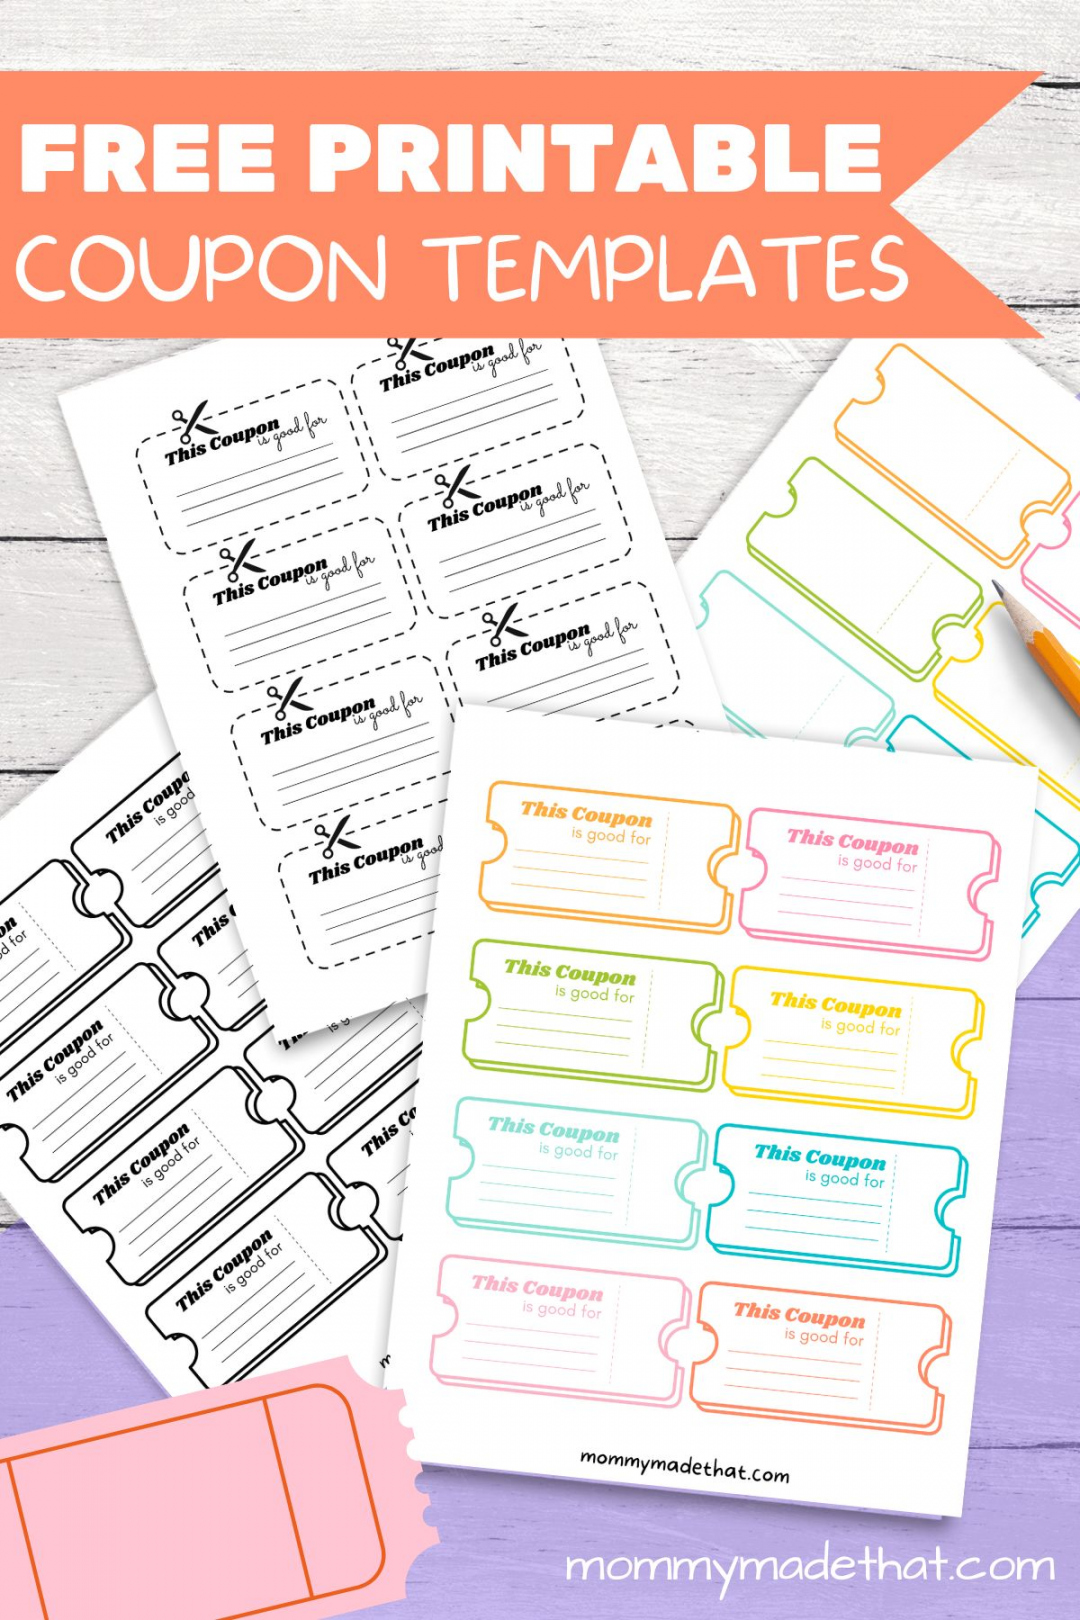 Free Printable Coupon Templates - Printable - Lots of Blank Coupon Templates (Free Printables!)